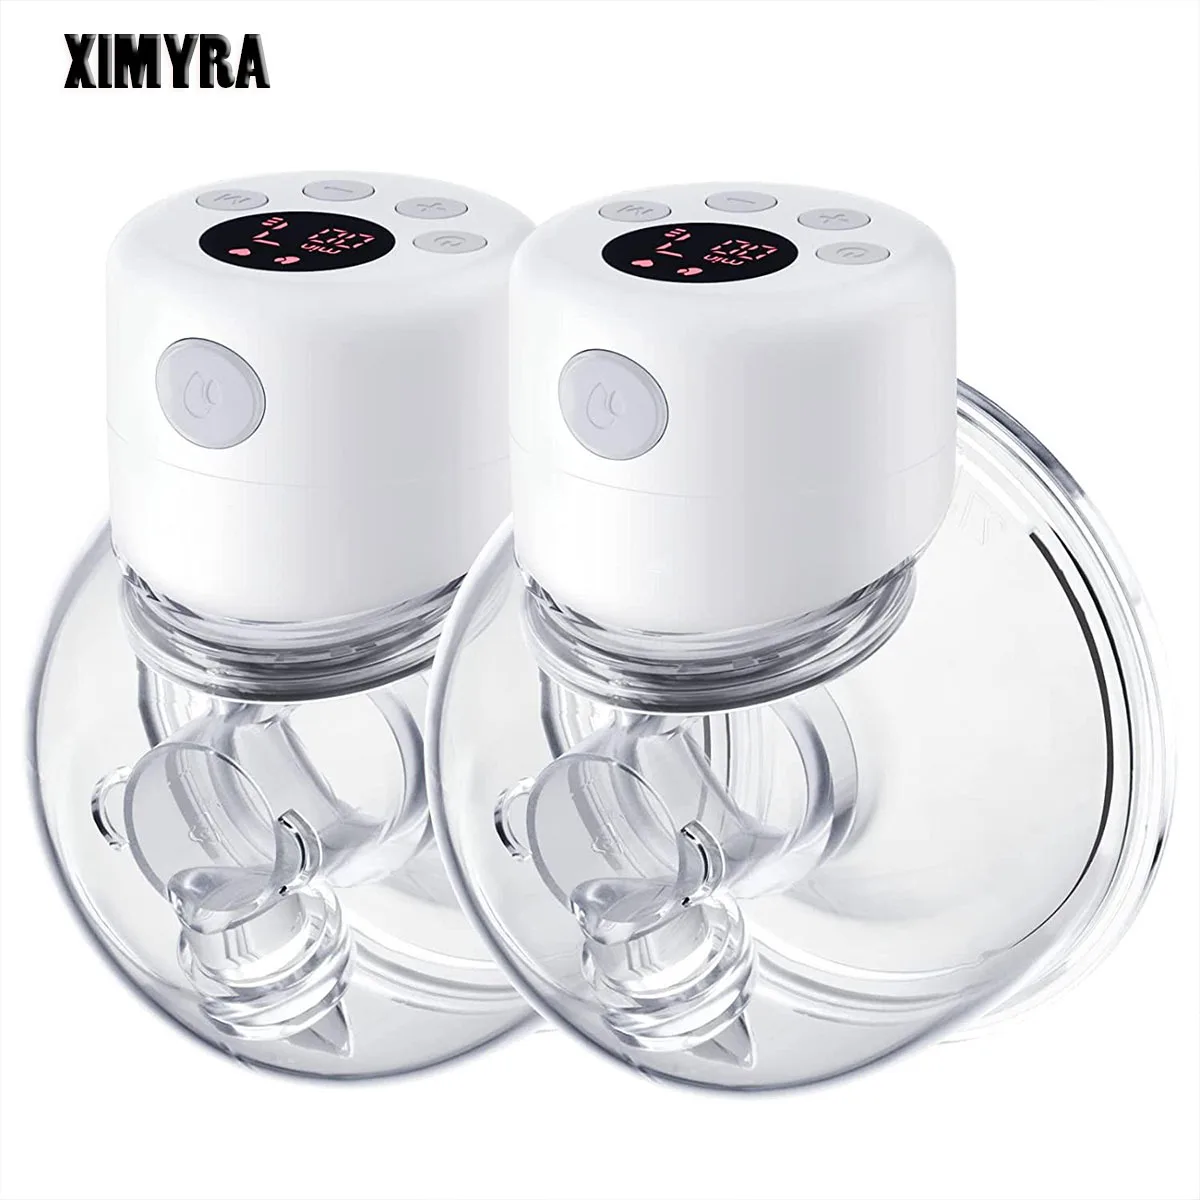 Электрический молокоотсос XIMYRA S12 портативное устройство для извлечения грудного